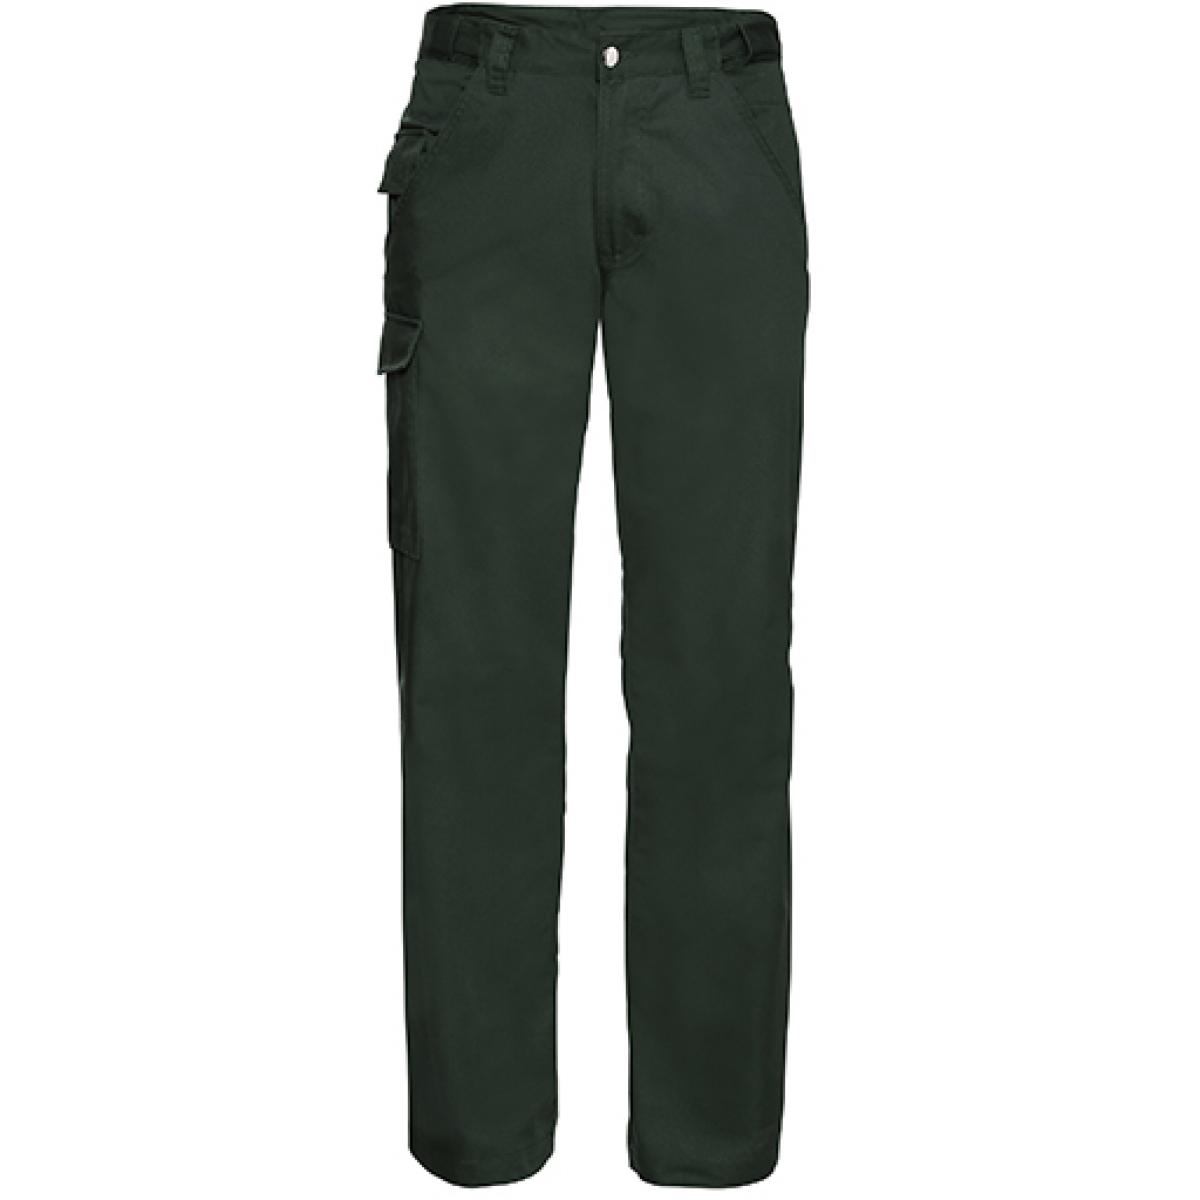 Hersteller: Russell Herstellernummer: R-001M-0 Artikelbezeichnung: Workwear-Hose aus Polyester-/Baumwoll-Twill Farbe: Bottle Green